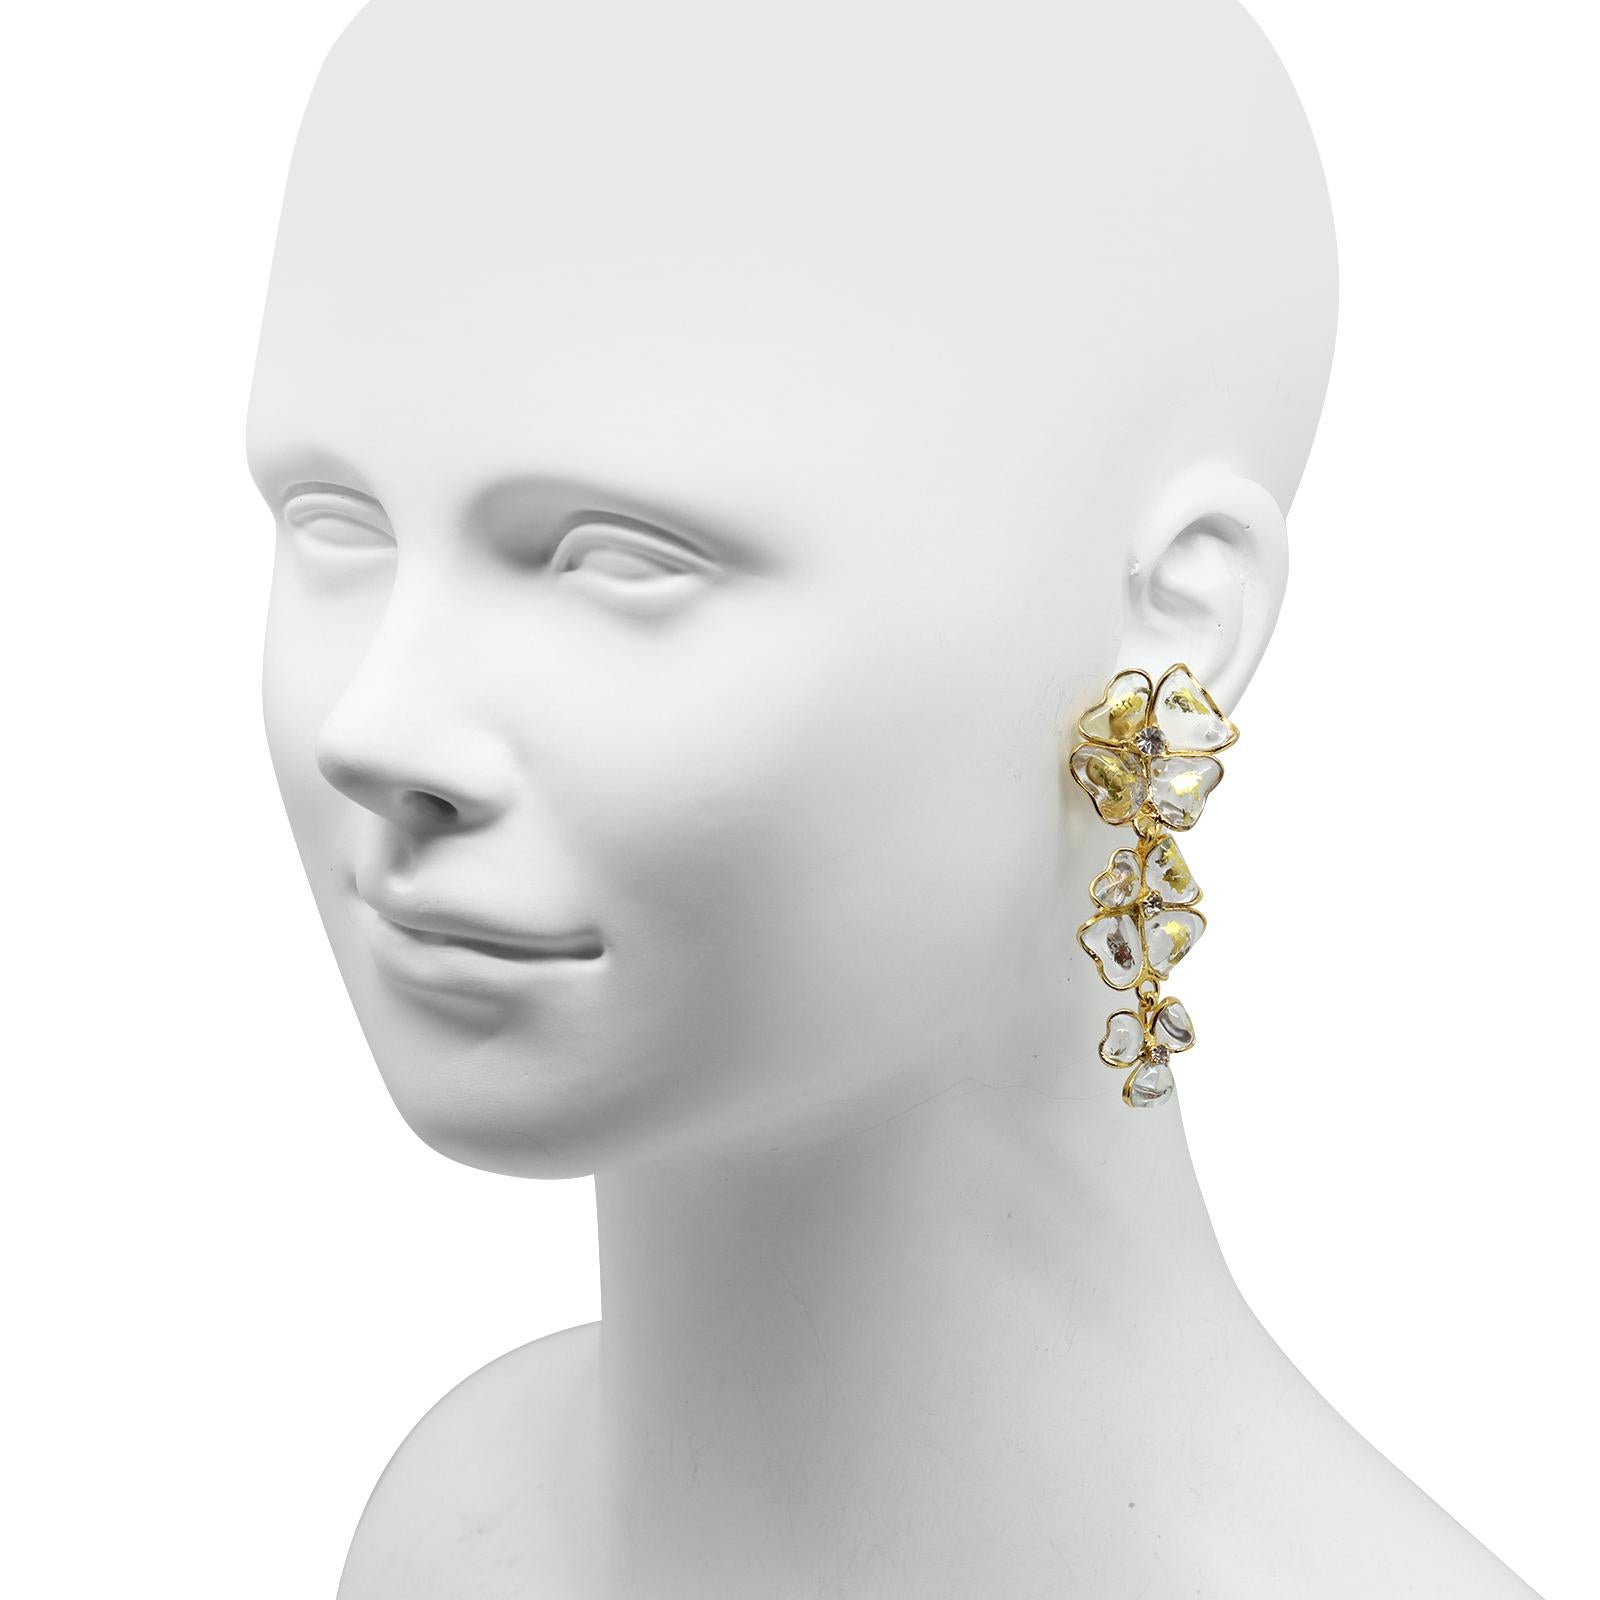 Boucles d'oreilles vintage Gripoix Translucide avec des morceaux d'or. Boucles d'oreilles pendantes avec des morceaux d'or et des pierres. Long collier/Sautoir sur place à assortir. C'est magnifique !   Elle est assortie au collier et parfois,